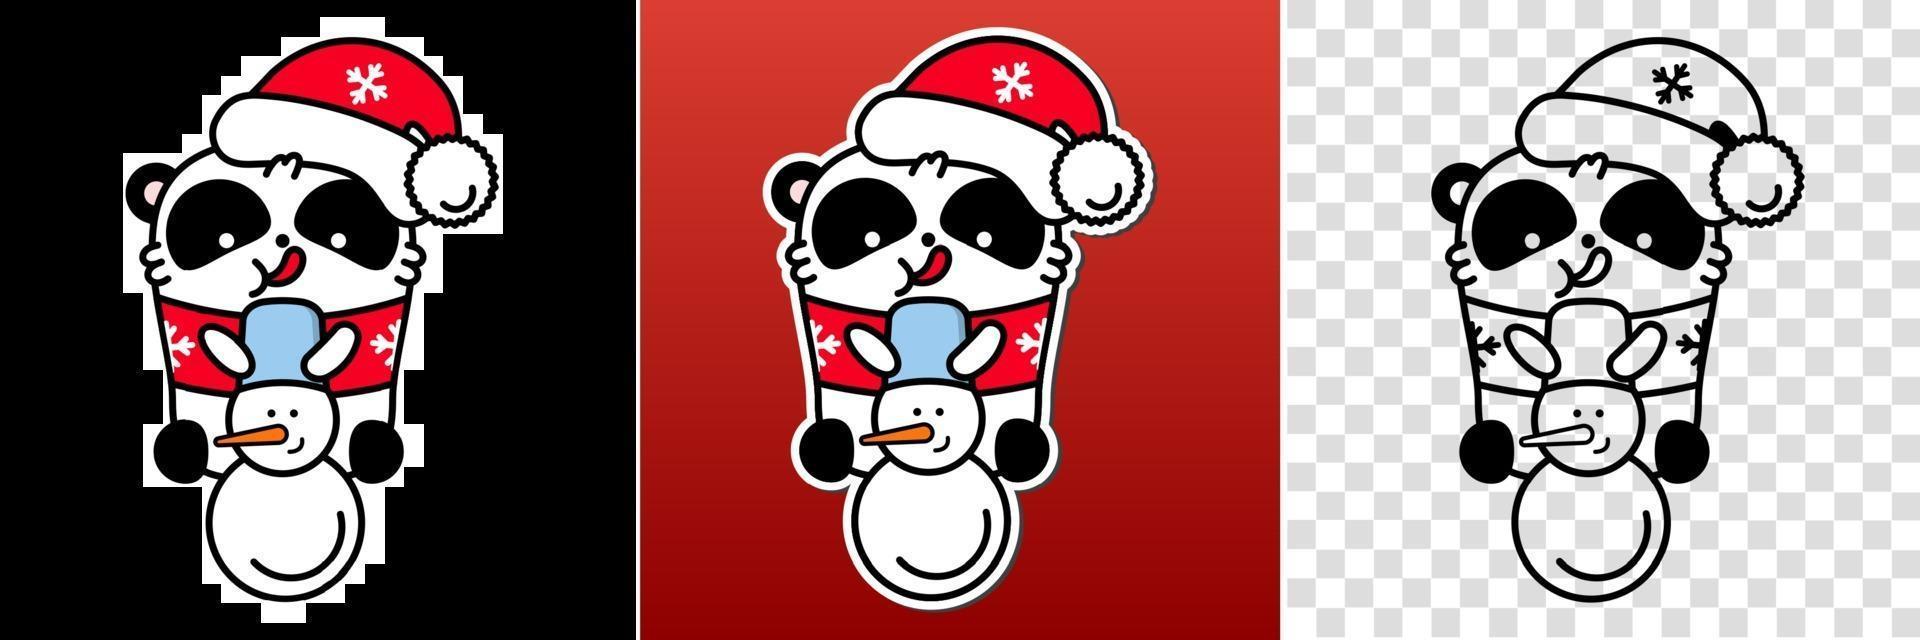 panda kawaii santa set. söt vektor glad björn i jul snögubbe hatt. linjär stilillustration på en vit bakgrund. klistermärke, tryck för färgläggning.